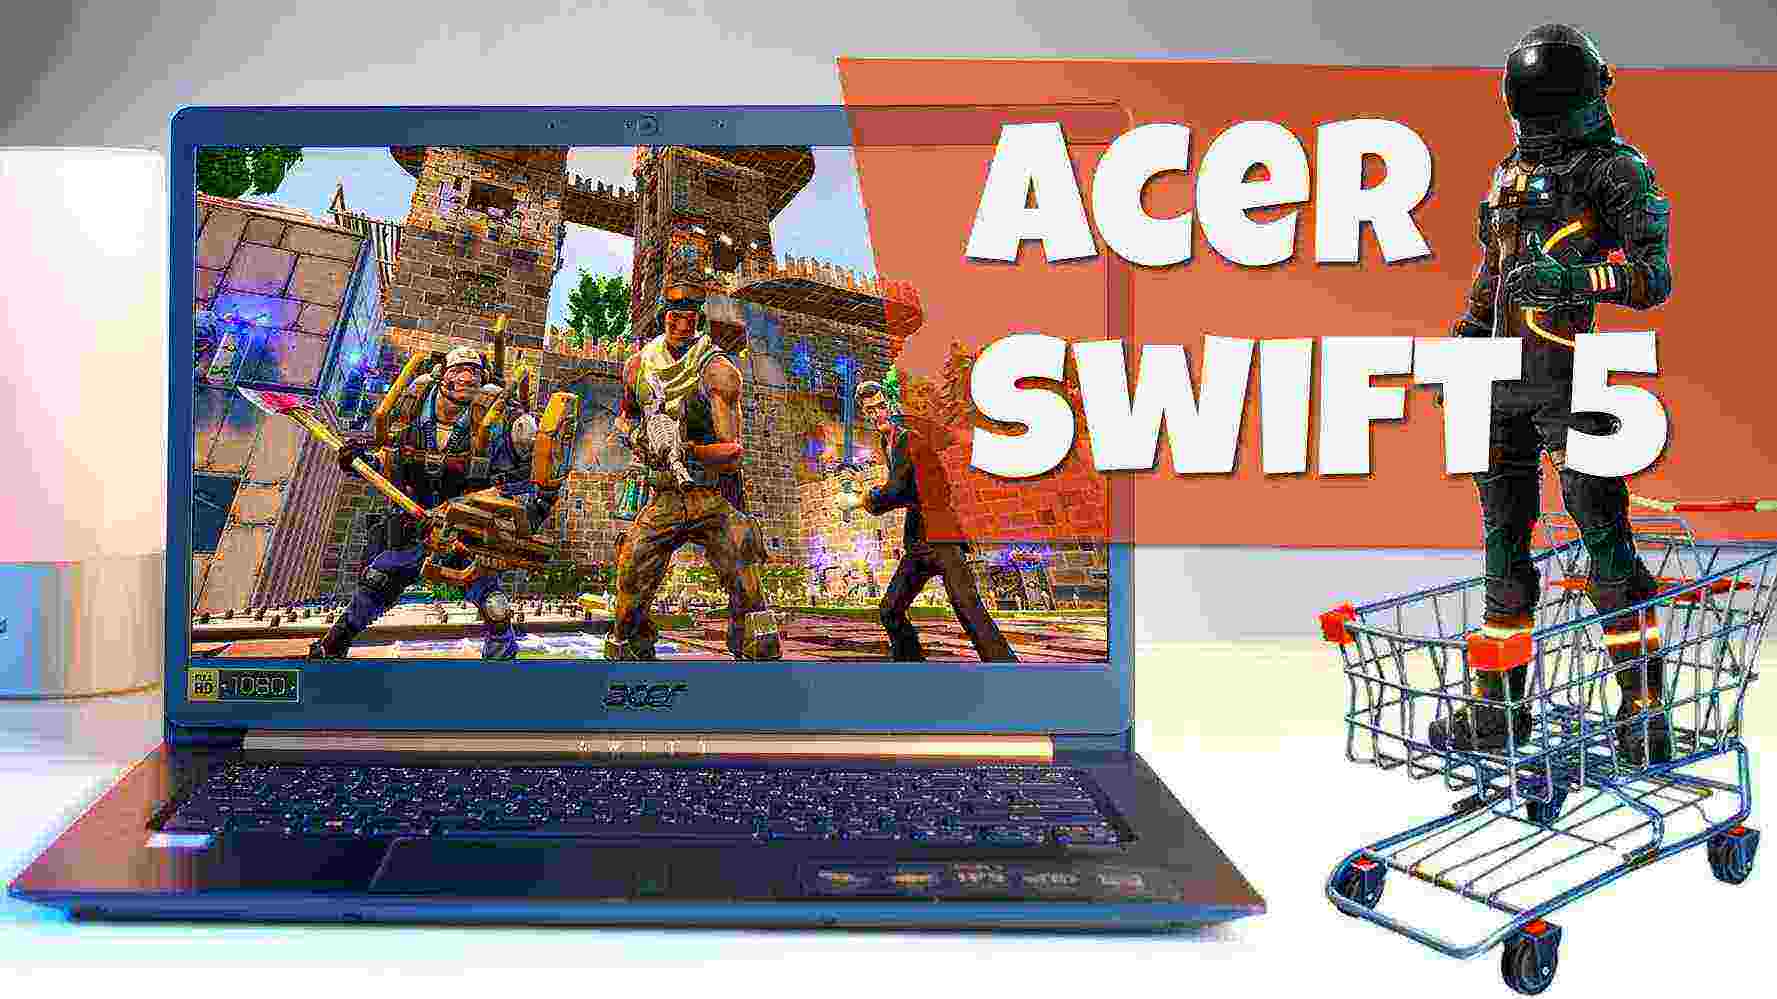 ОЧЕНЬ легкий ноутбук – обзор Acer Swift 5